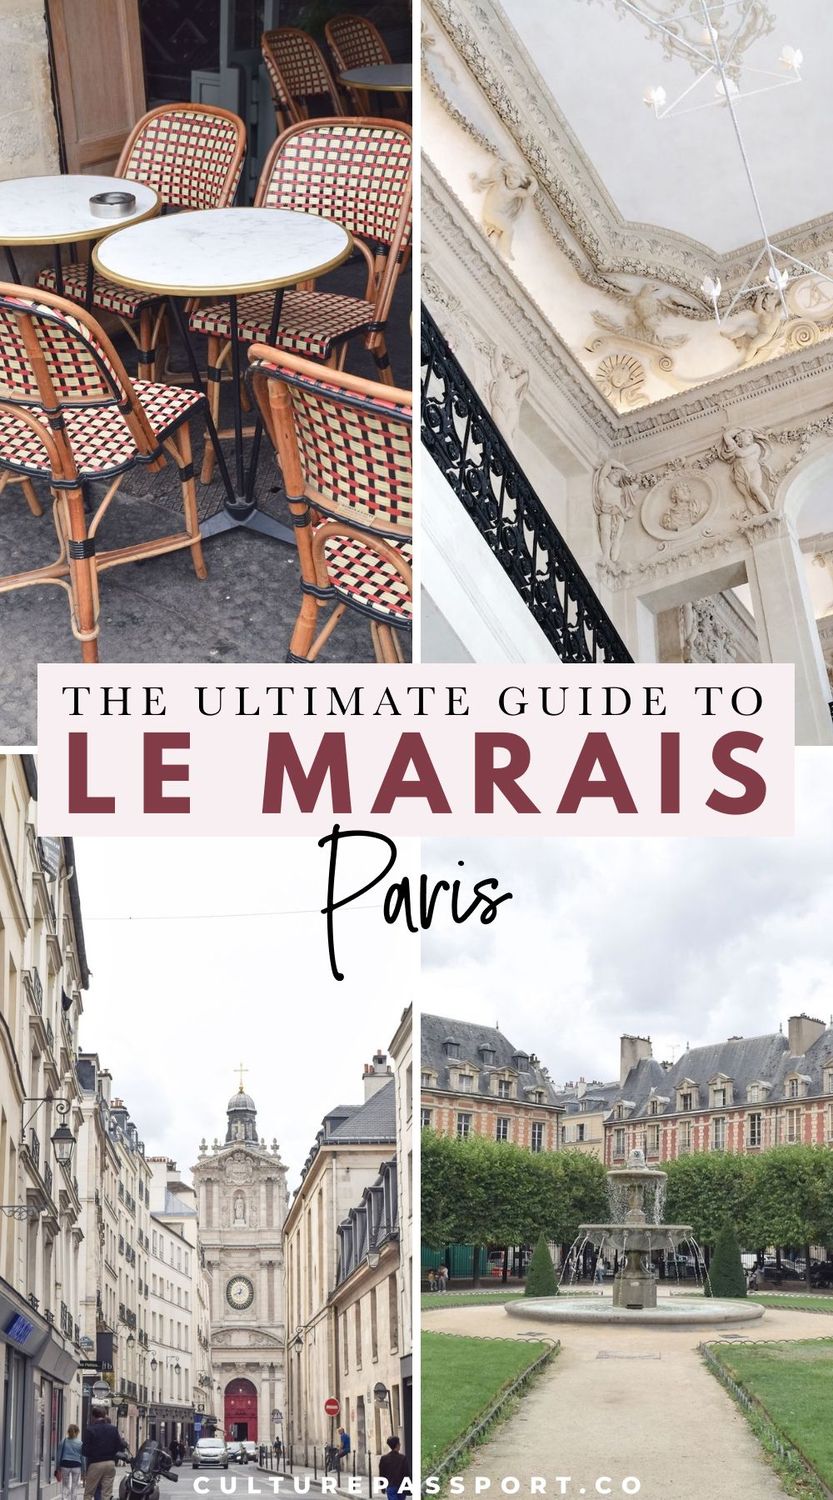 The Ultimate Guide to Le Marais Paris